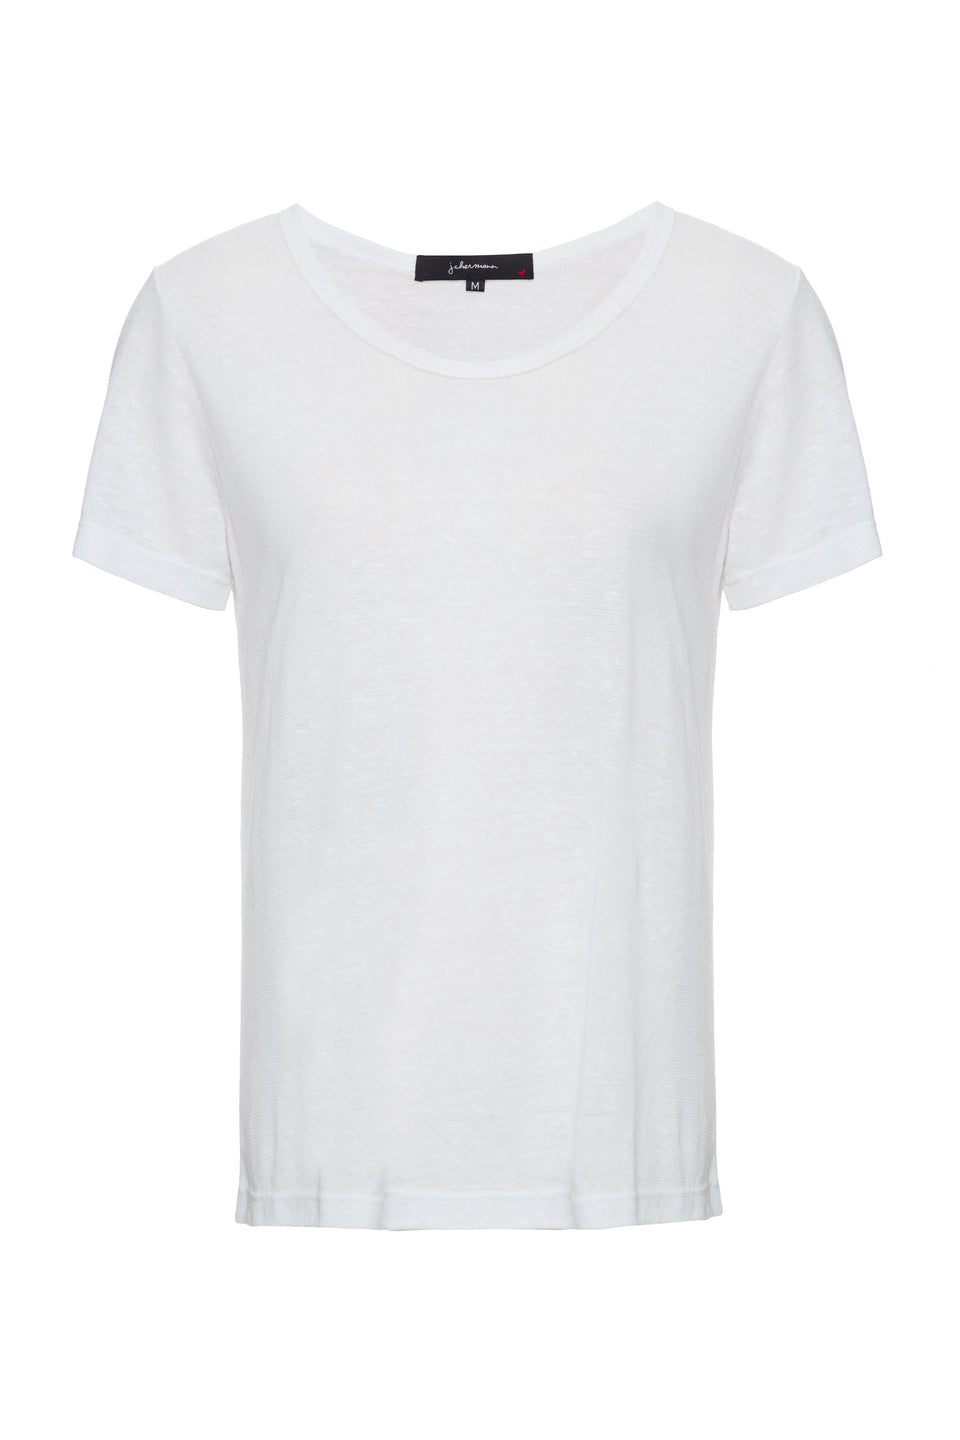 Camiseta Perfect Basic Off white